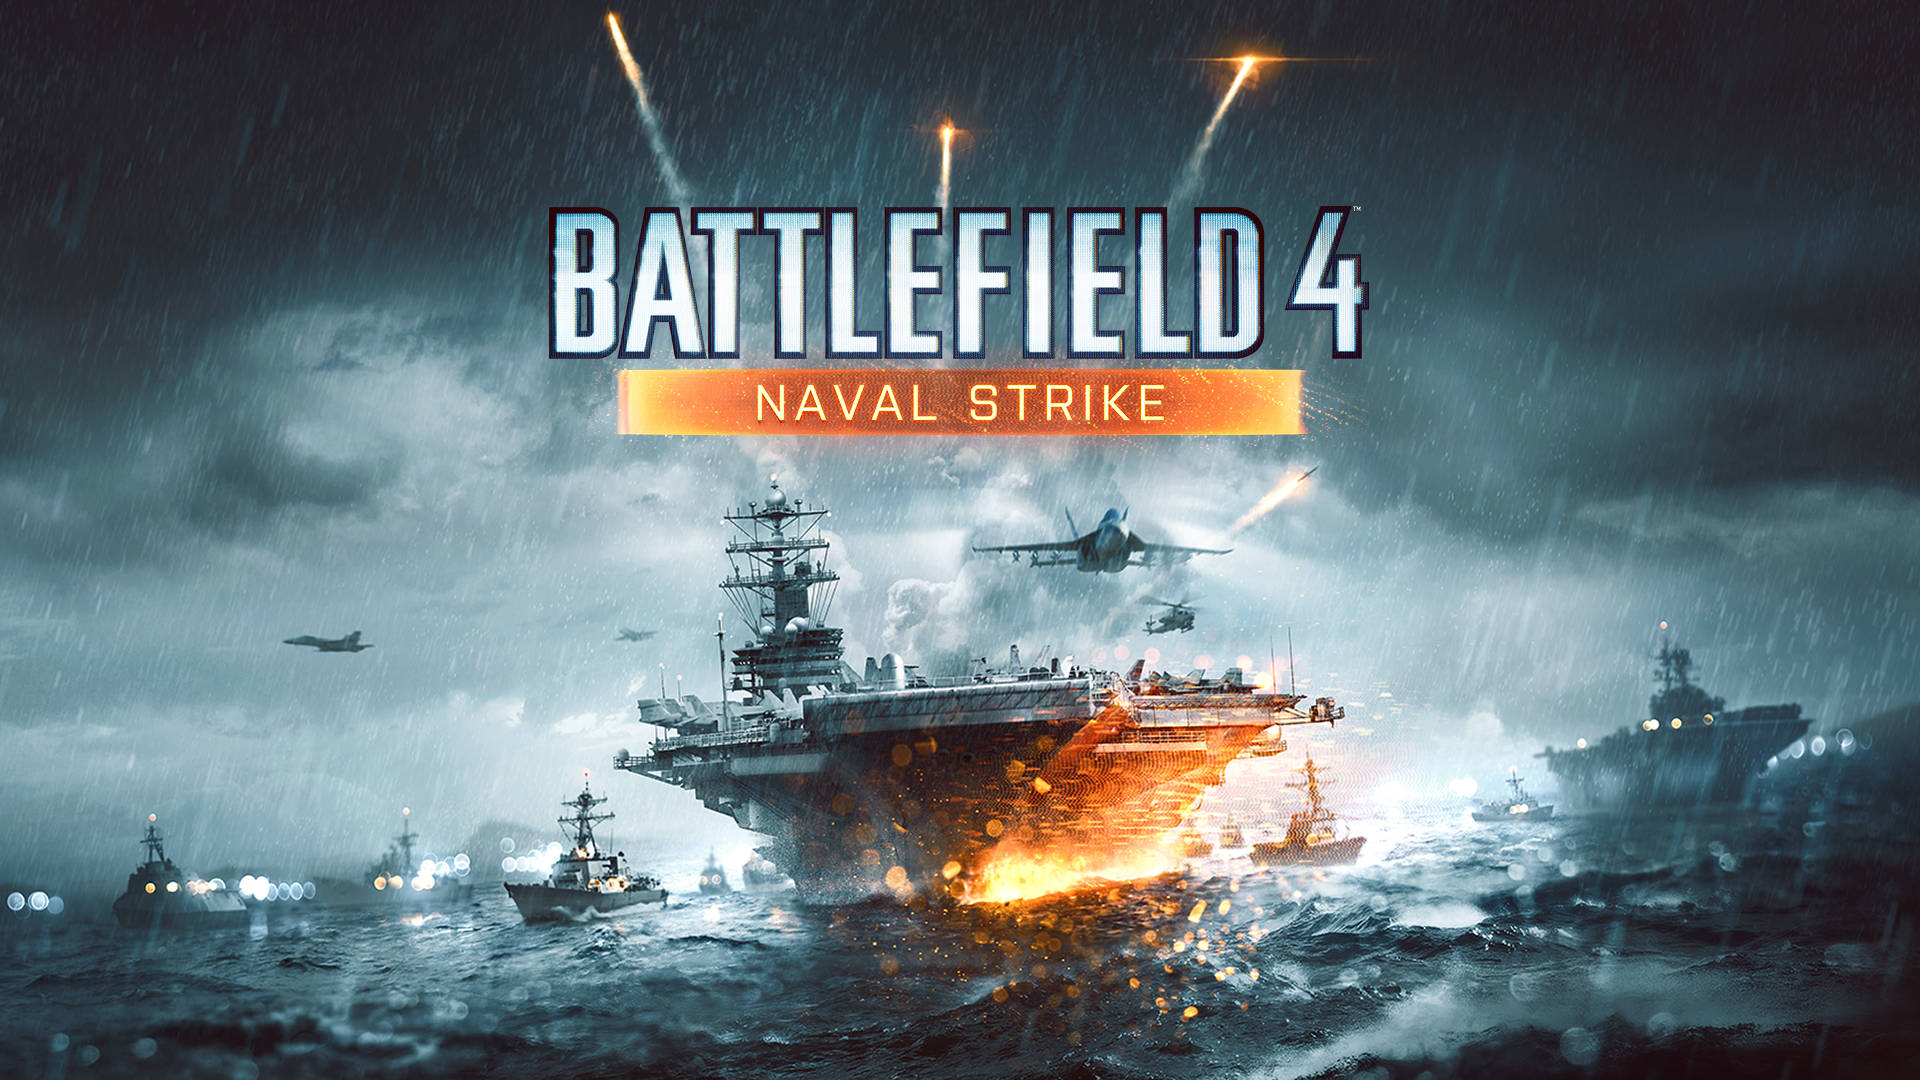 Battlefield 4 Naval Strike Background